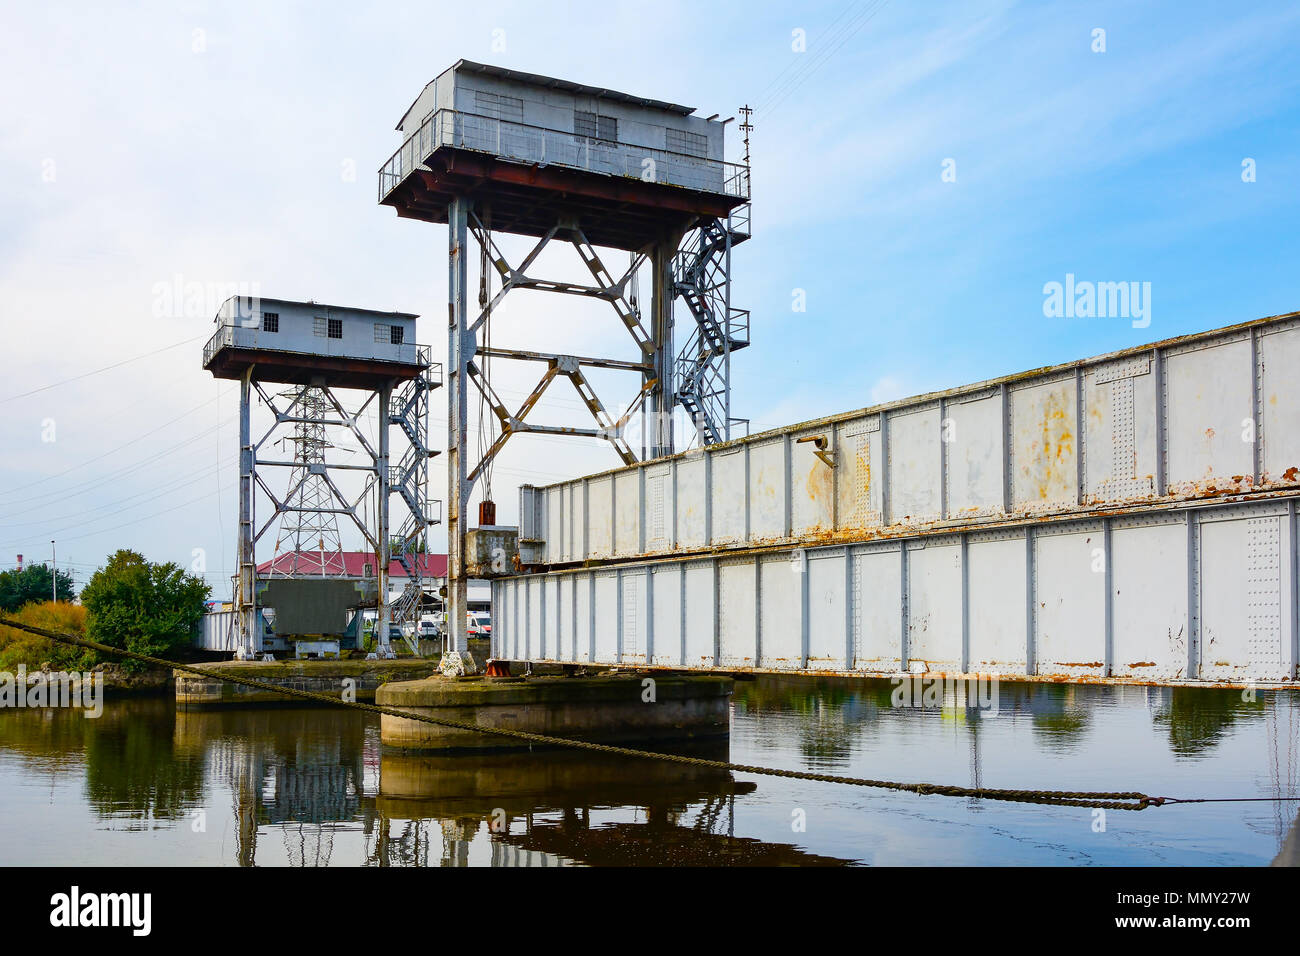 Kaliningrad, l'ancienne gare désaffectée du pont sur la rivière Pregel dans le port commercial area Banque D'Images